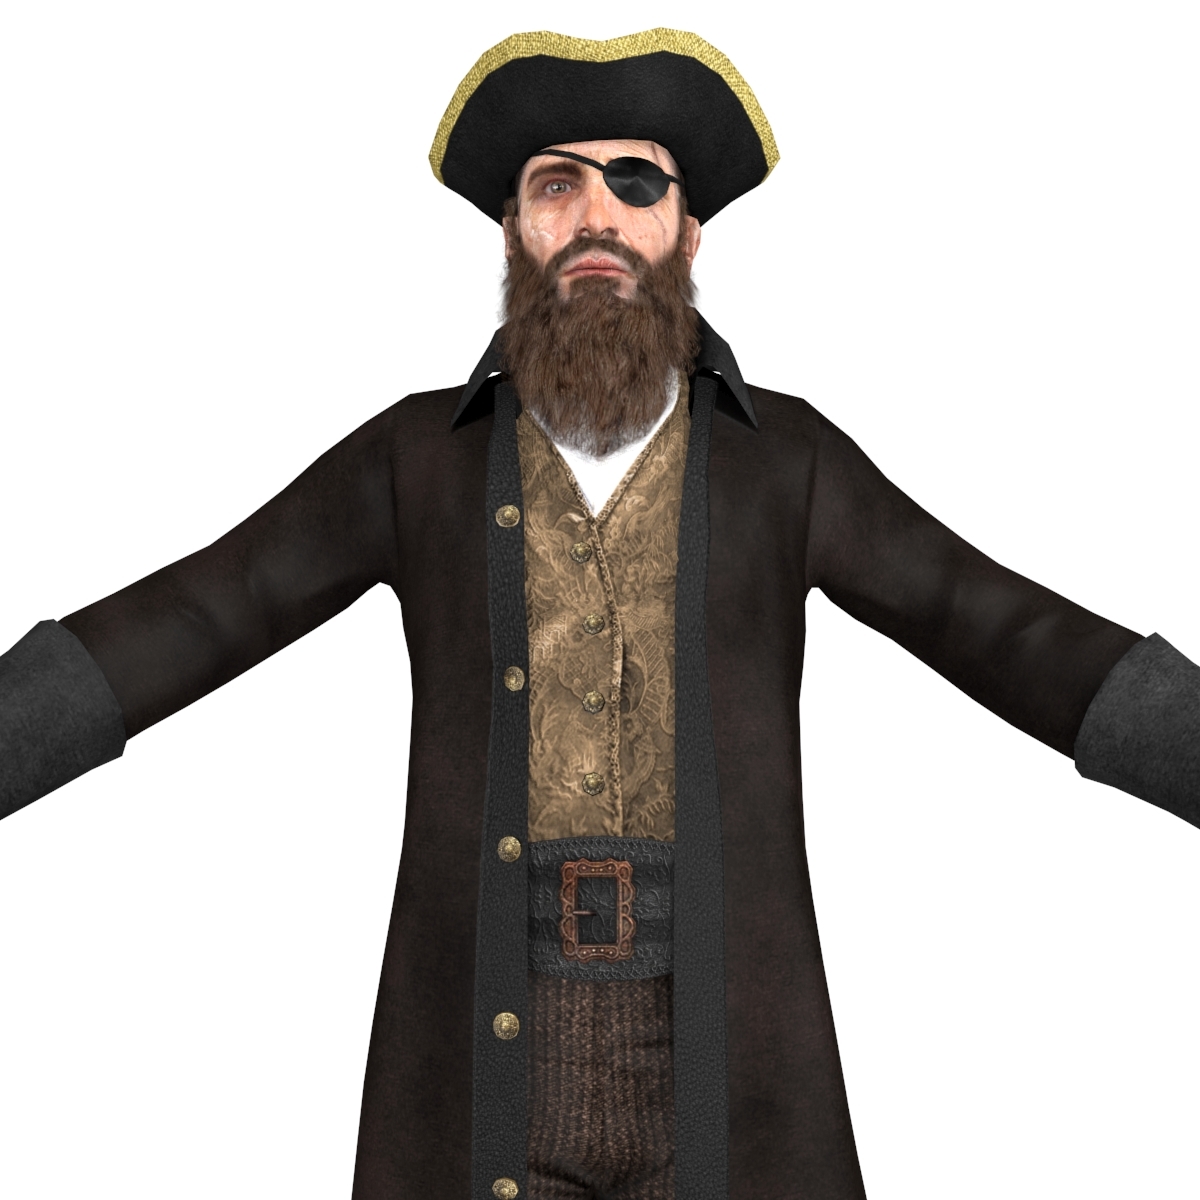 海盗船长2.0图片